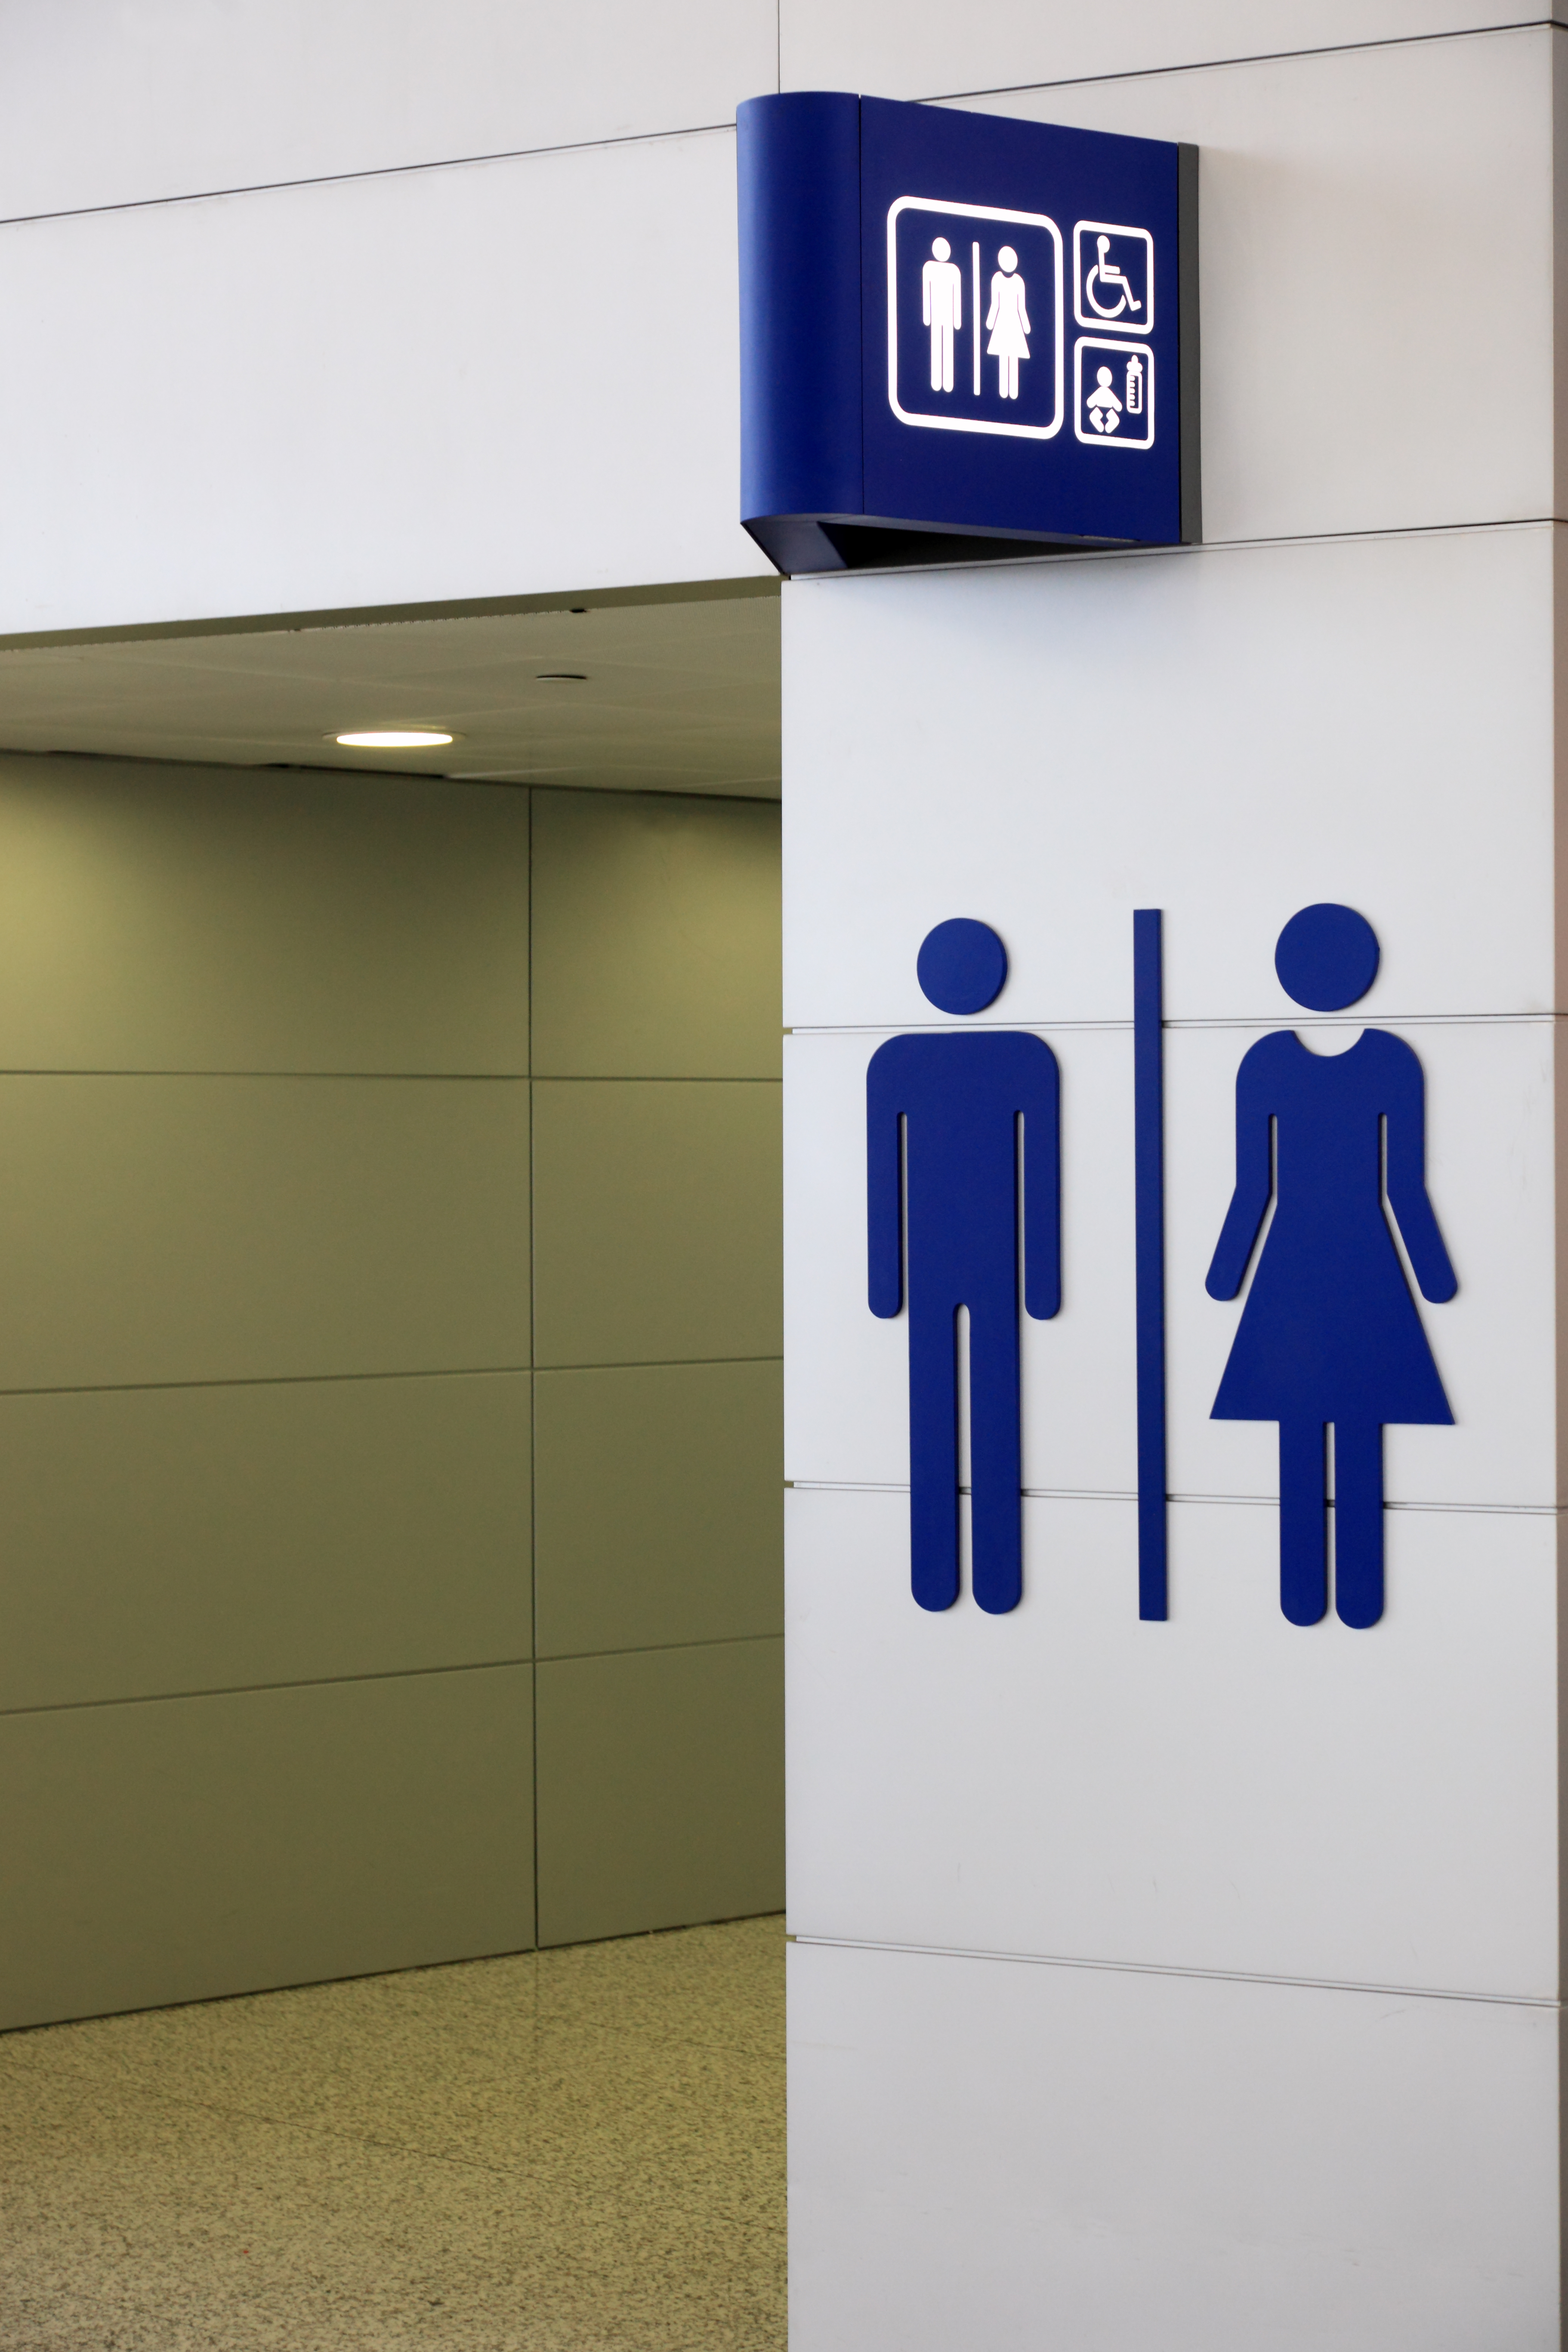 Universal sign for restroom